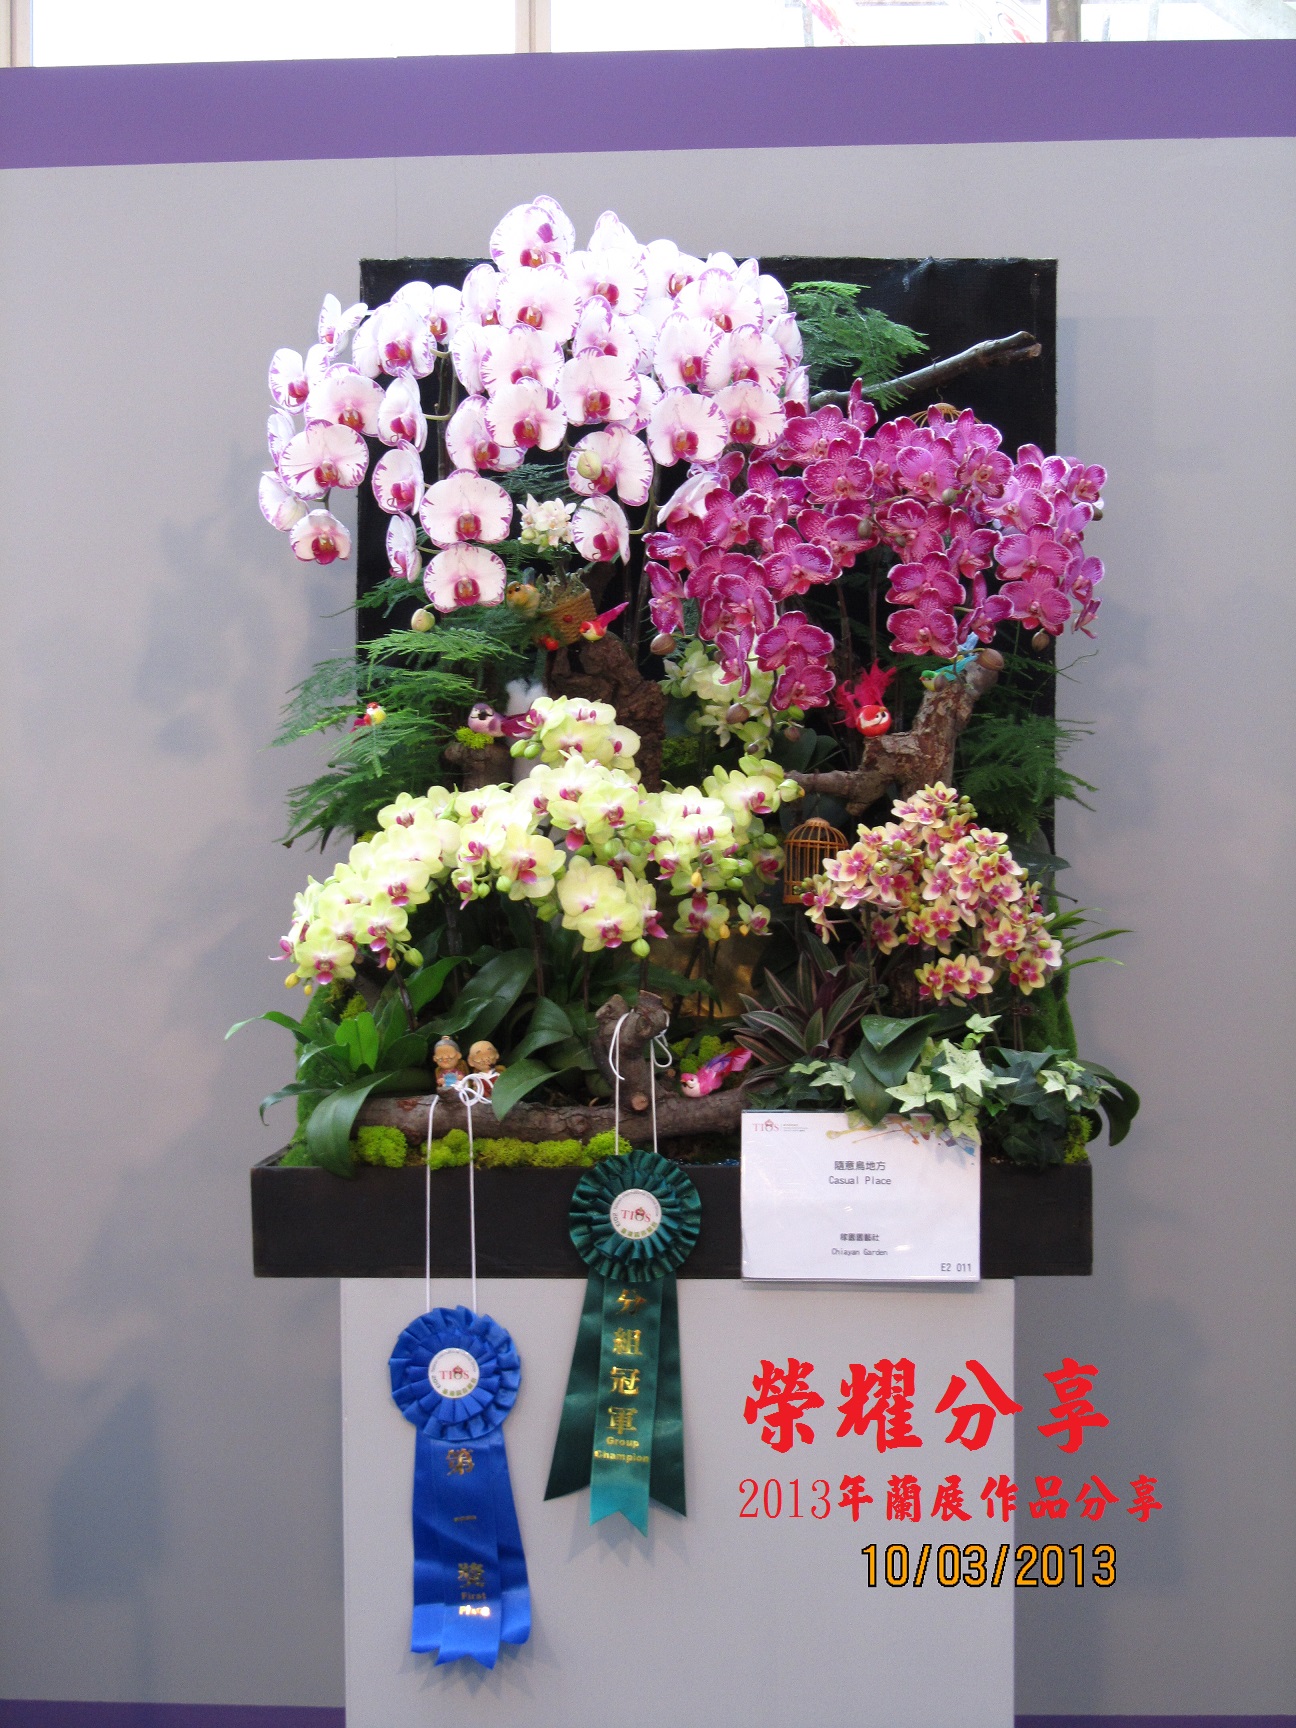 2013年台灣國際蘭展比賽作品展